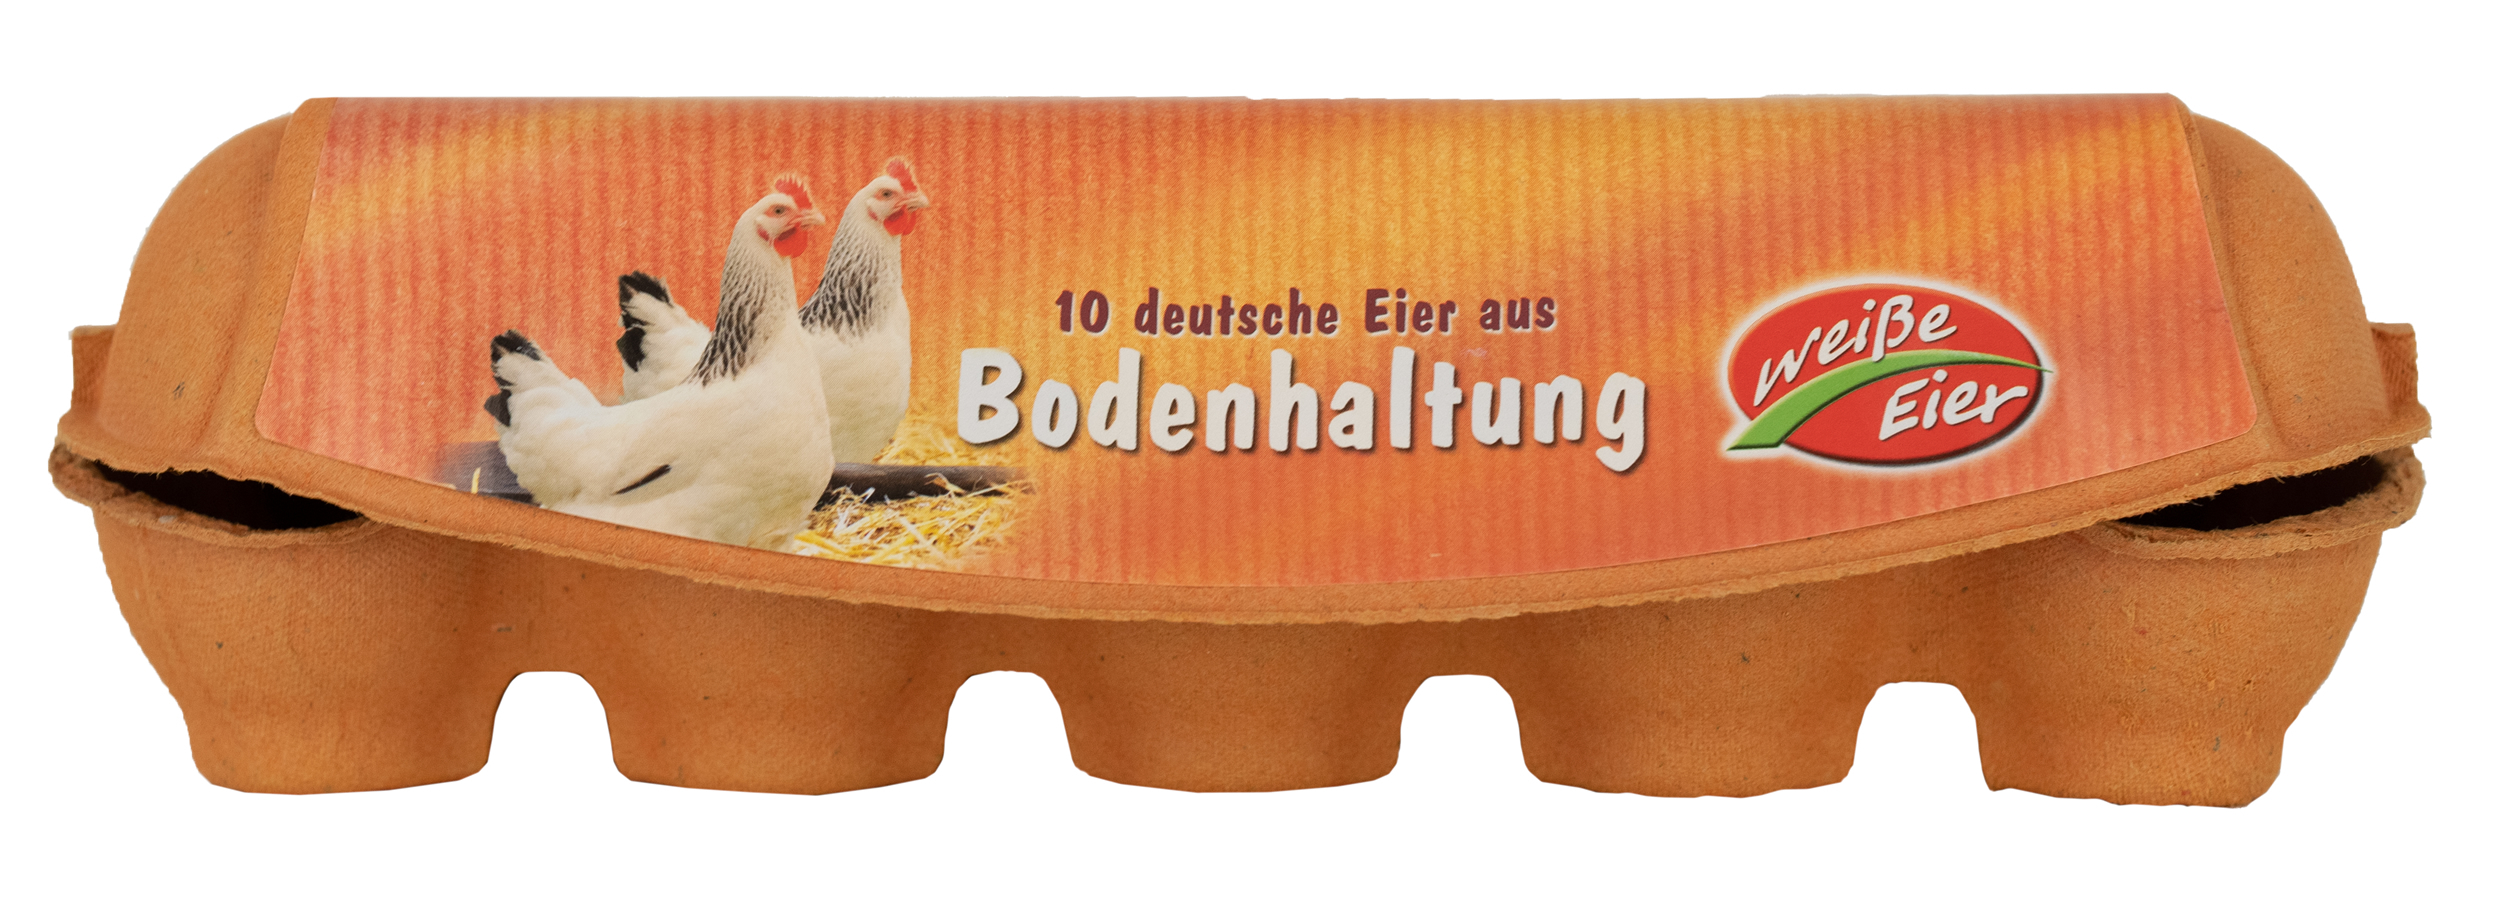 10 deutsche Eier aus Bodenhaltung Artikelnummer 32181 // Geflügelhof Andres Mendig